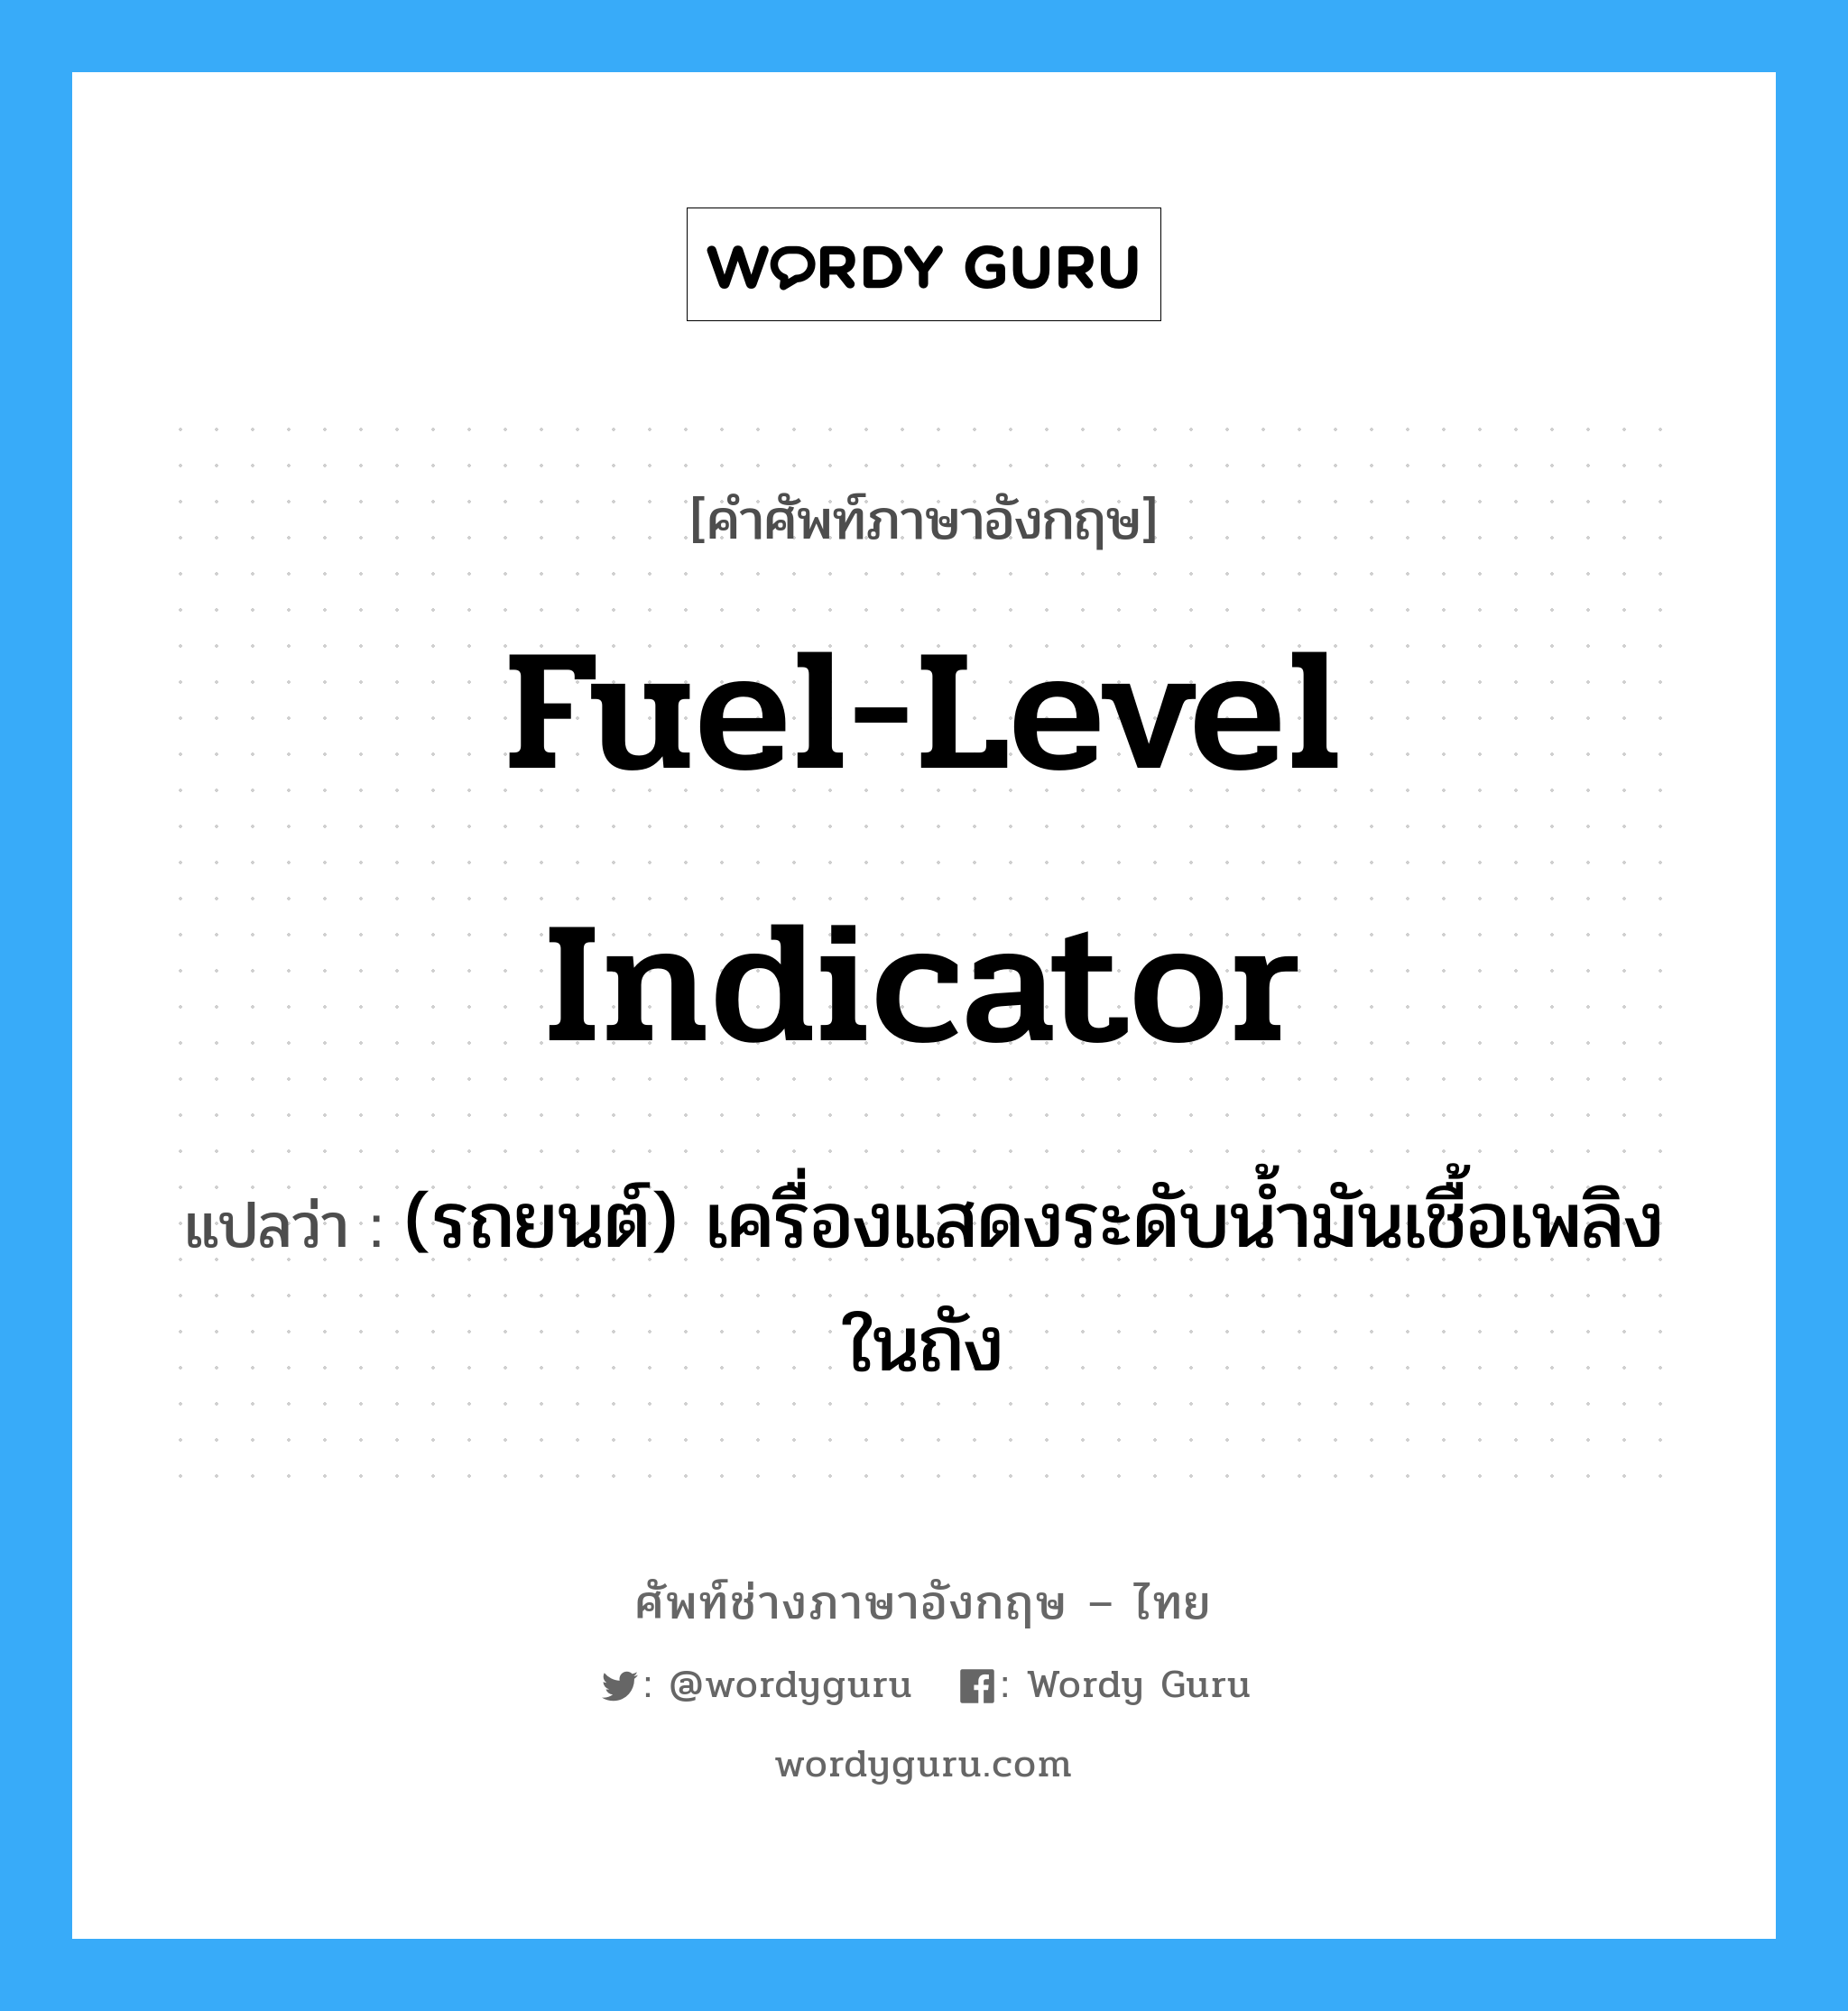 fuel-level indicator แปลว่า?, คำศัพท์ช่างภาษาอังกฤษ - ไทย fuel-level indicator คำศัพท์ภาษาอังกฤษ fuel-level indicator แปลว่า (รถยนต์) เครื่องแสดงระดับน้ำมันเชื้อเพลิงในถัง